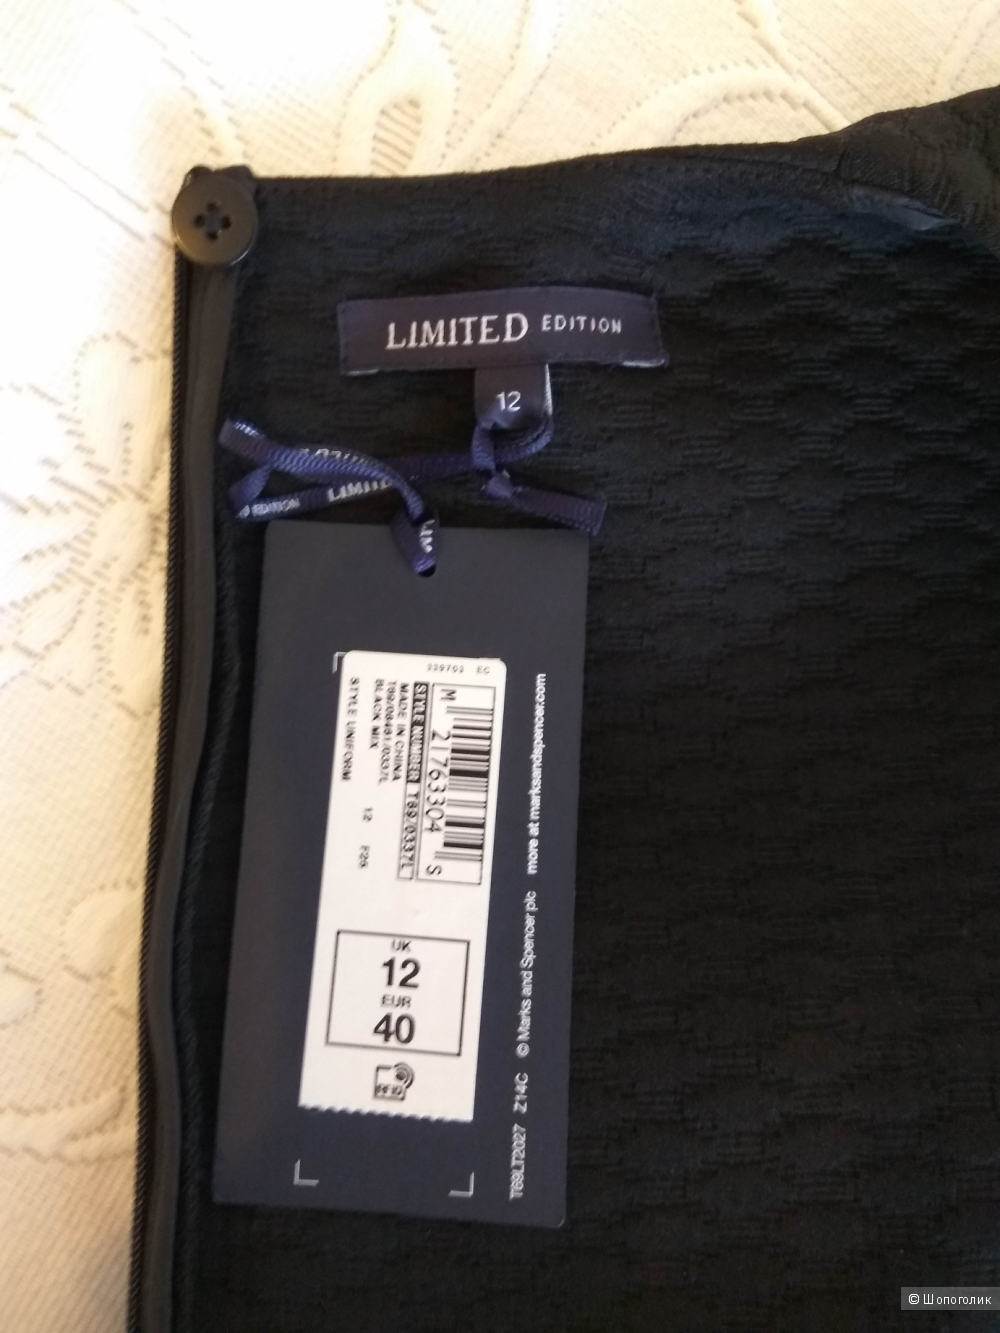 Классическое черное платье  Marks&Spencer  LIMITED Collection 12 разм.(46 росс.)